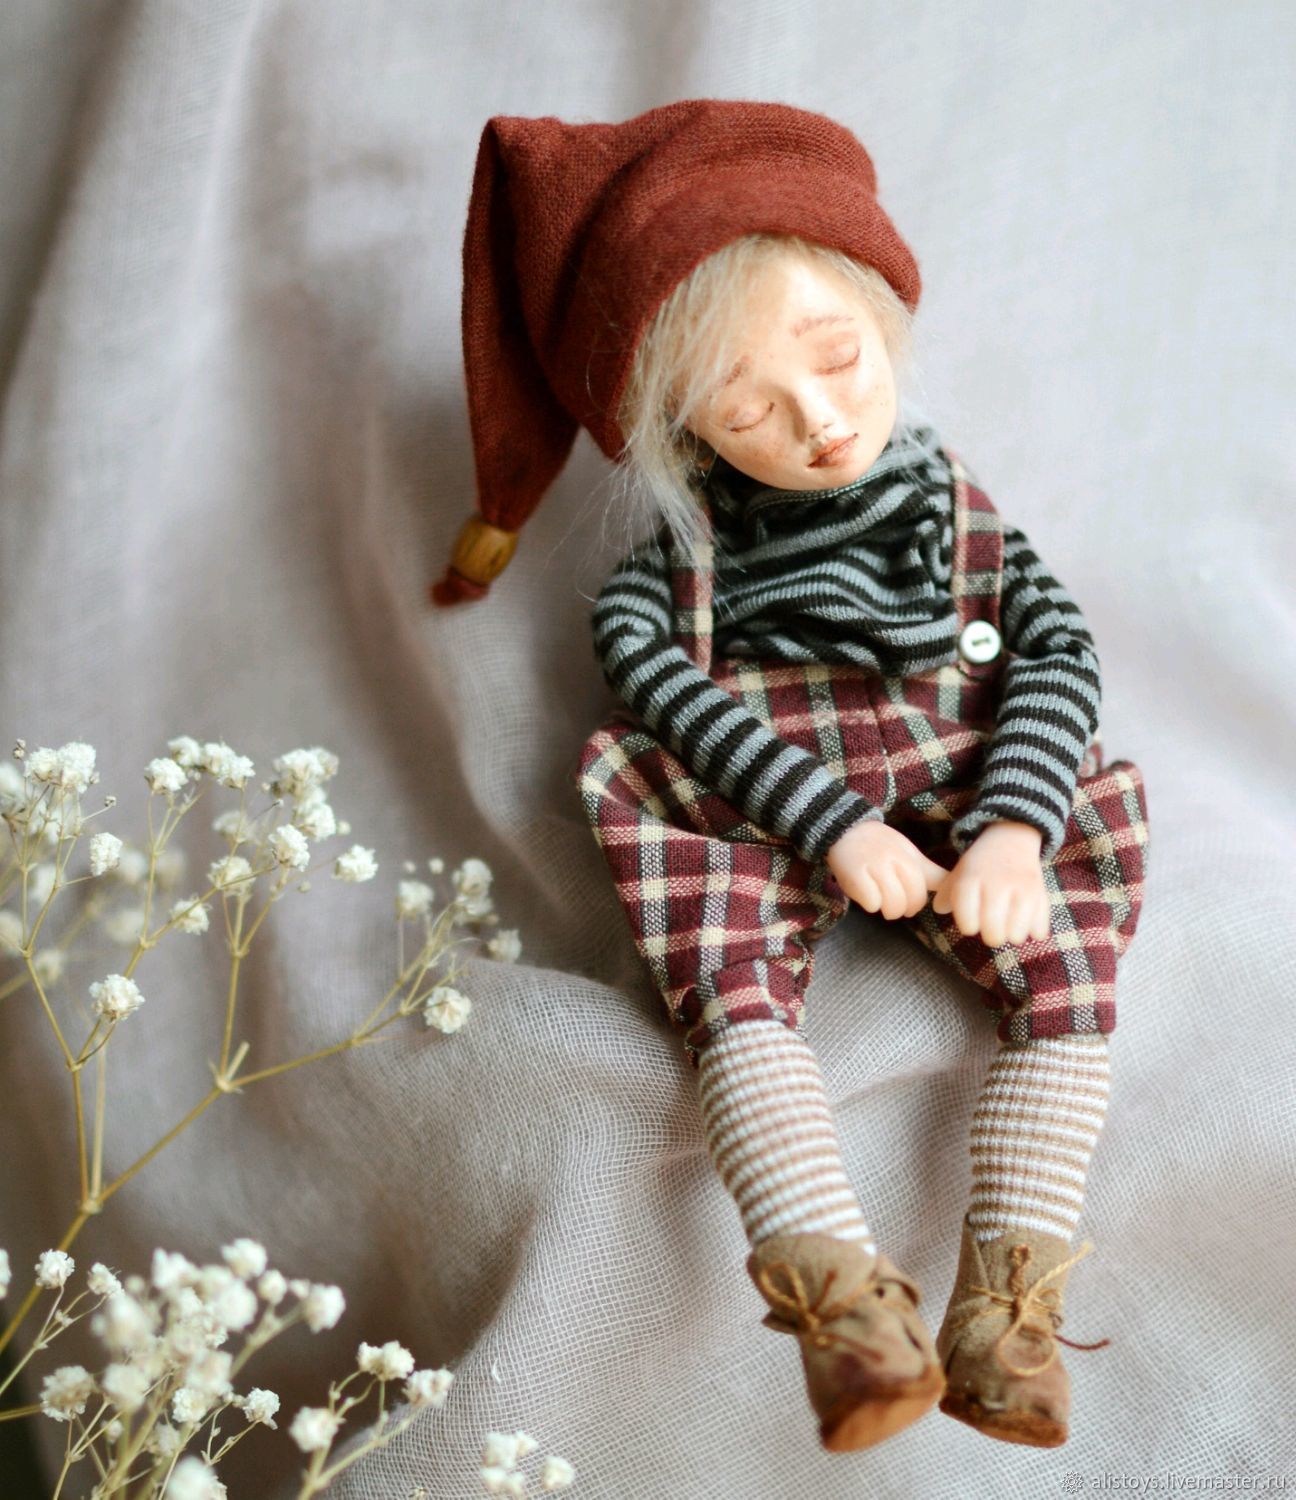 Sleeping baby Etienne, Dolls, Ekaterinburg,  Фото №1